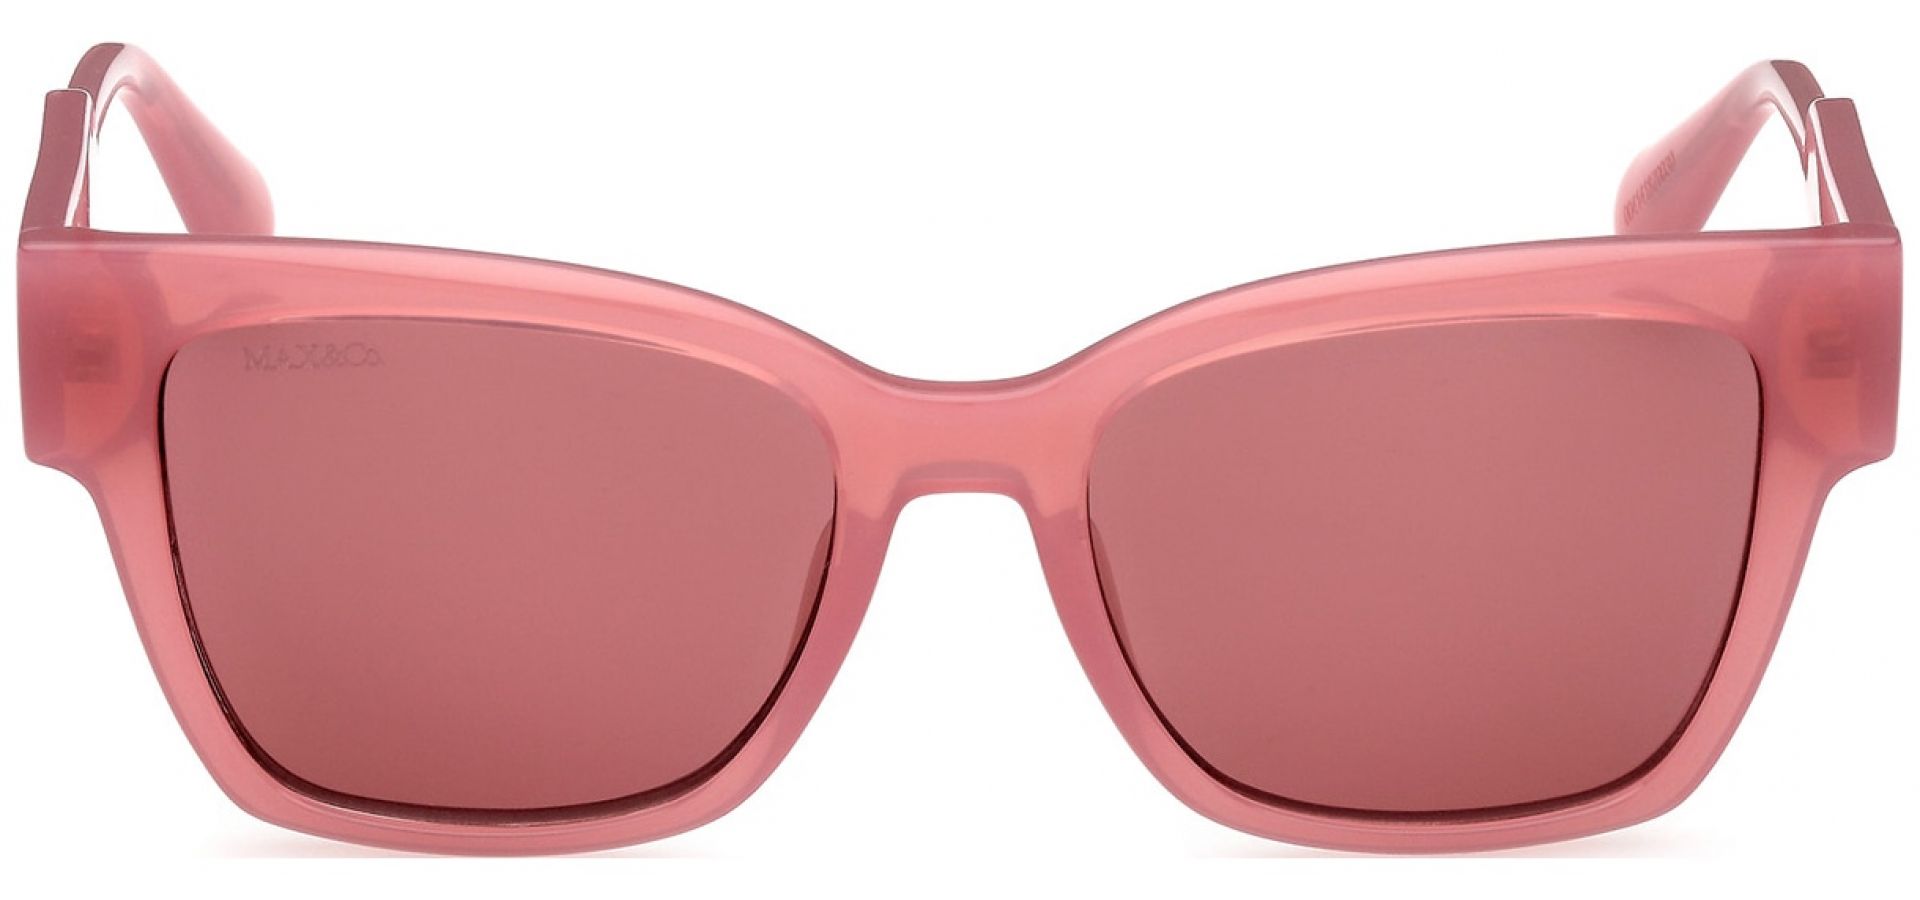 Sunčane naočale Max&Co MO0045 52 72S: Boja: Pink, Veličina: 52-17-140, Spol: ženske, Materijal: acetat